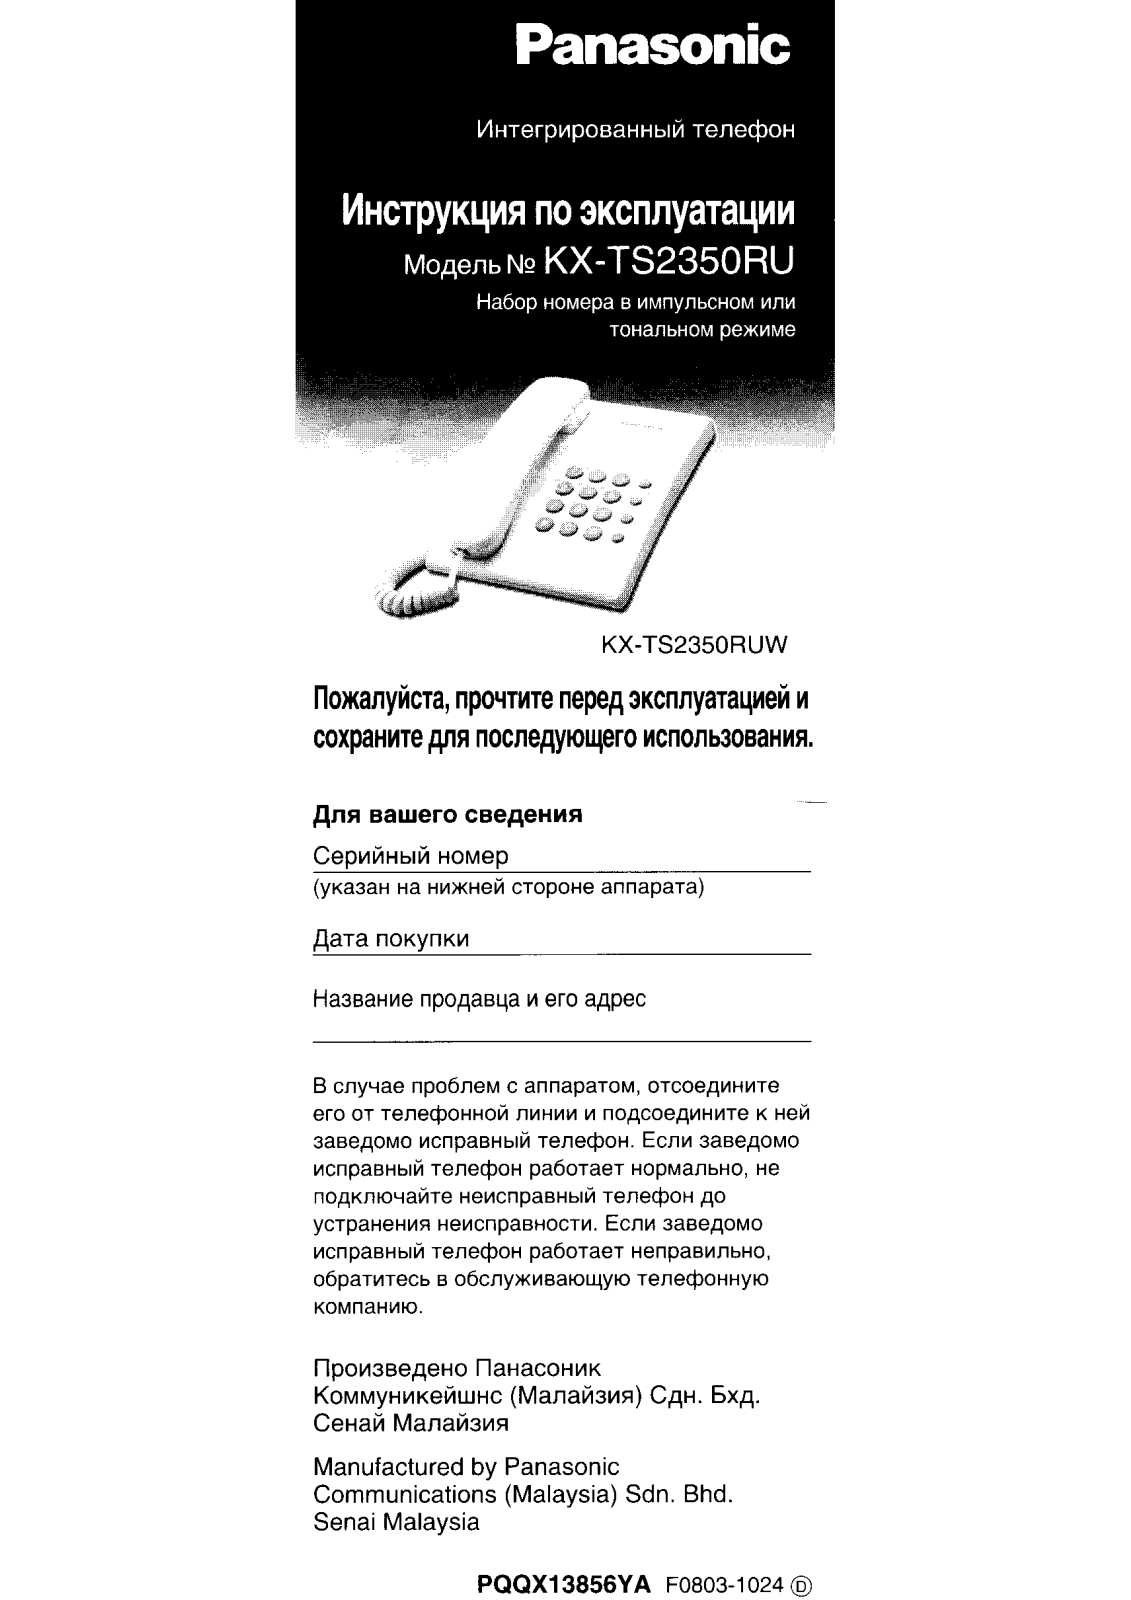 Panasonic KX-TS2350RU User Manual